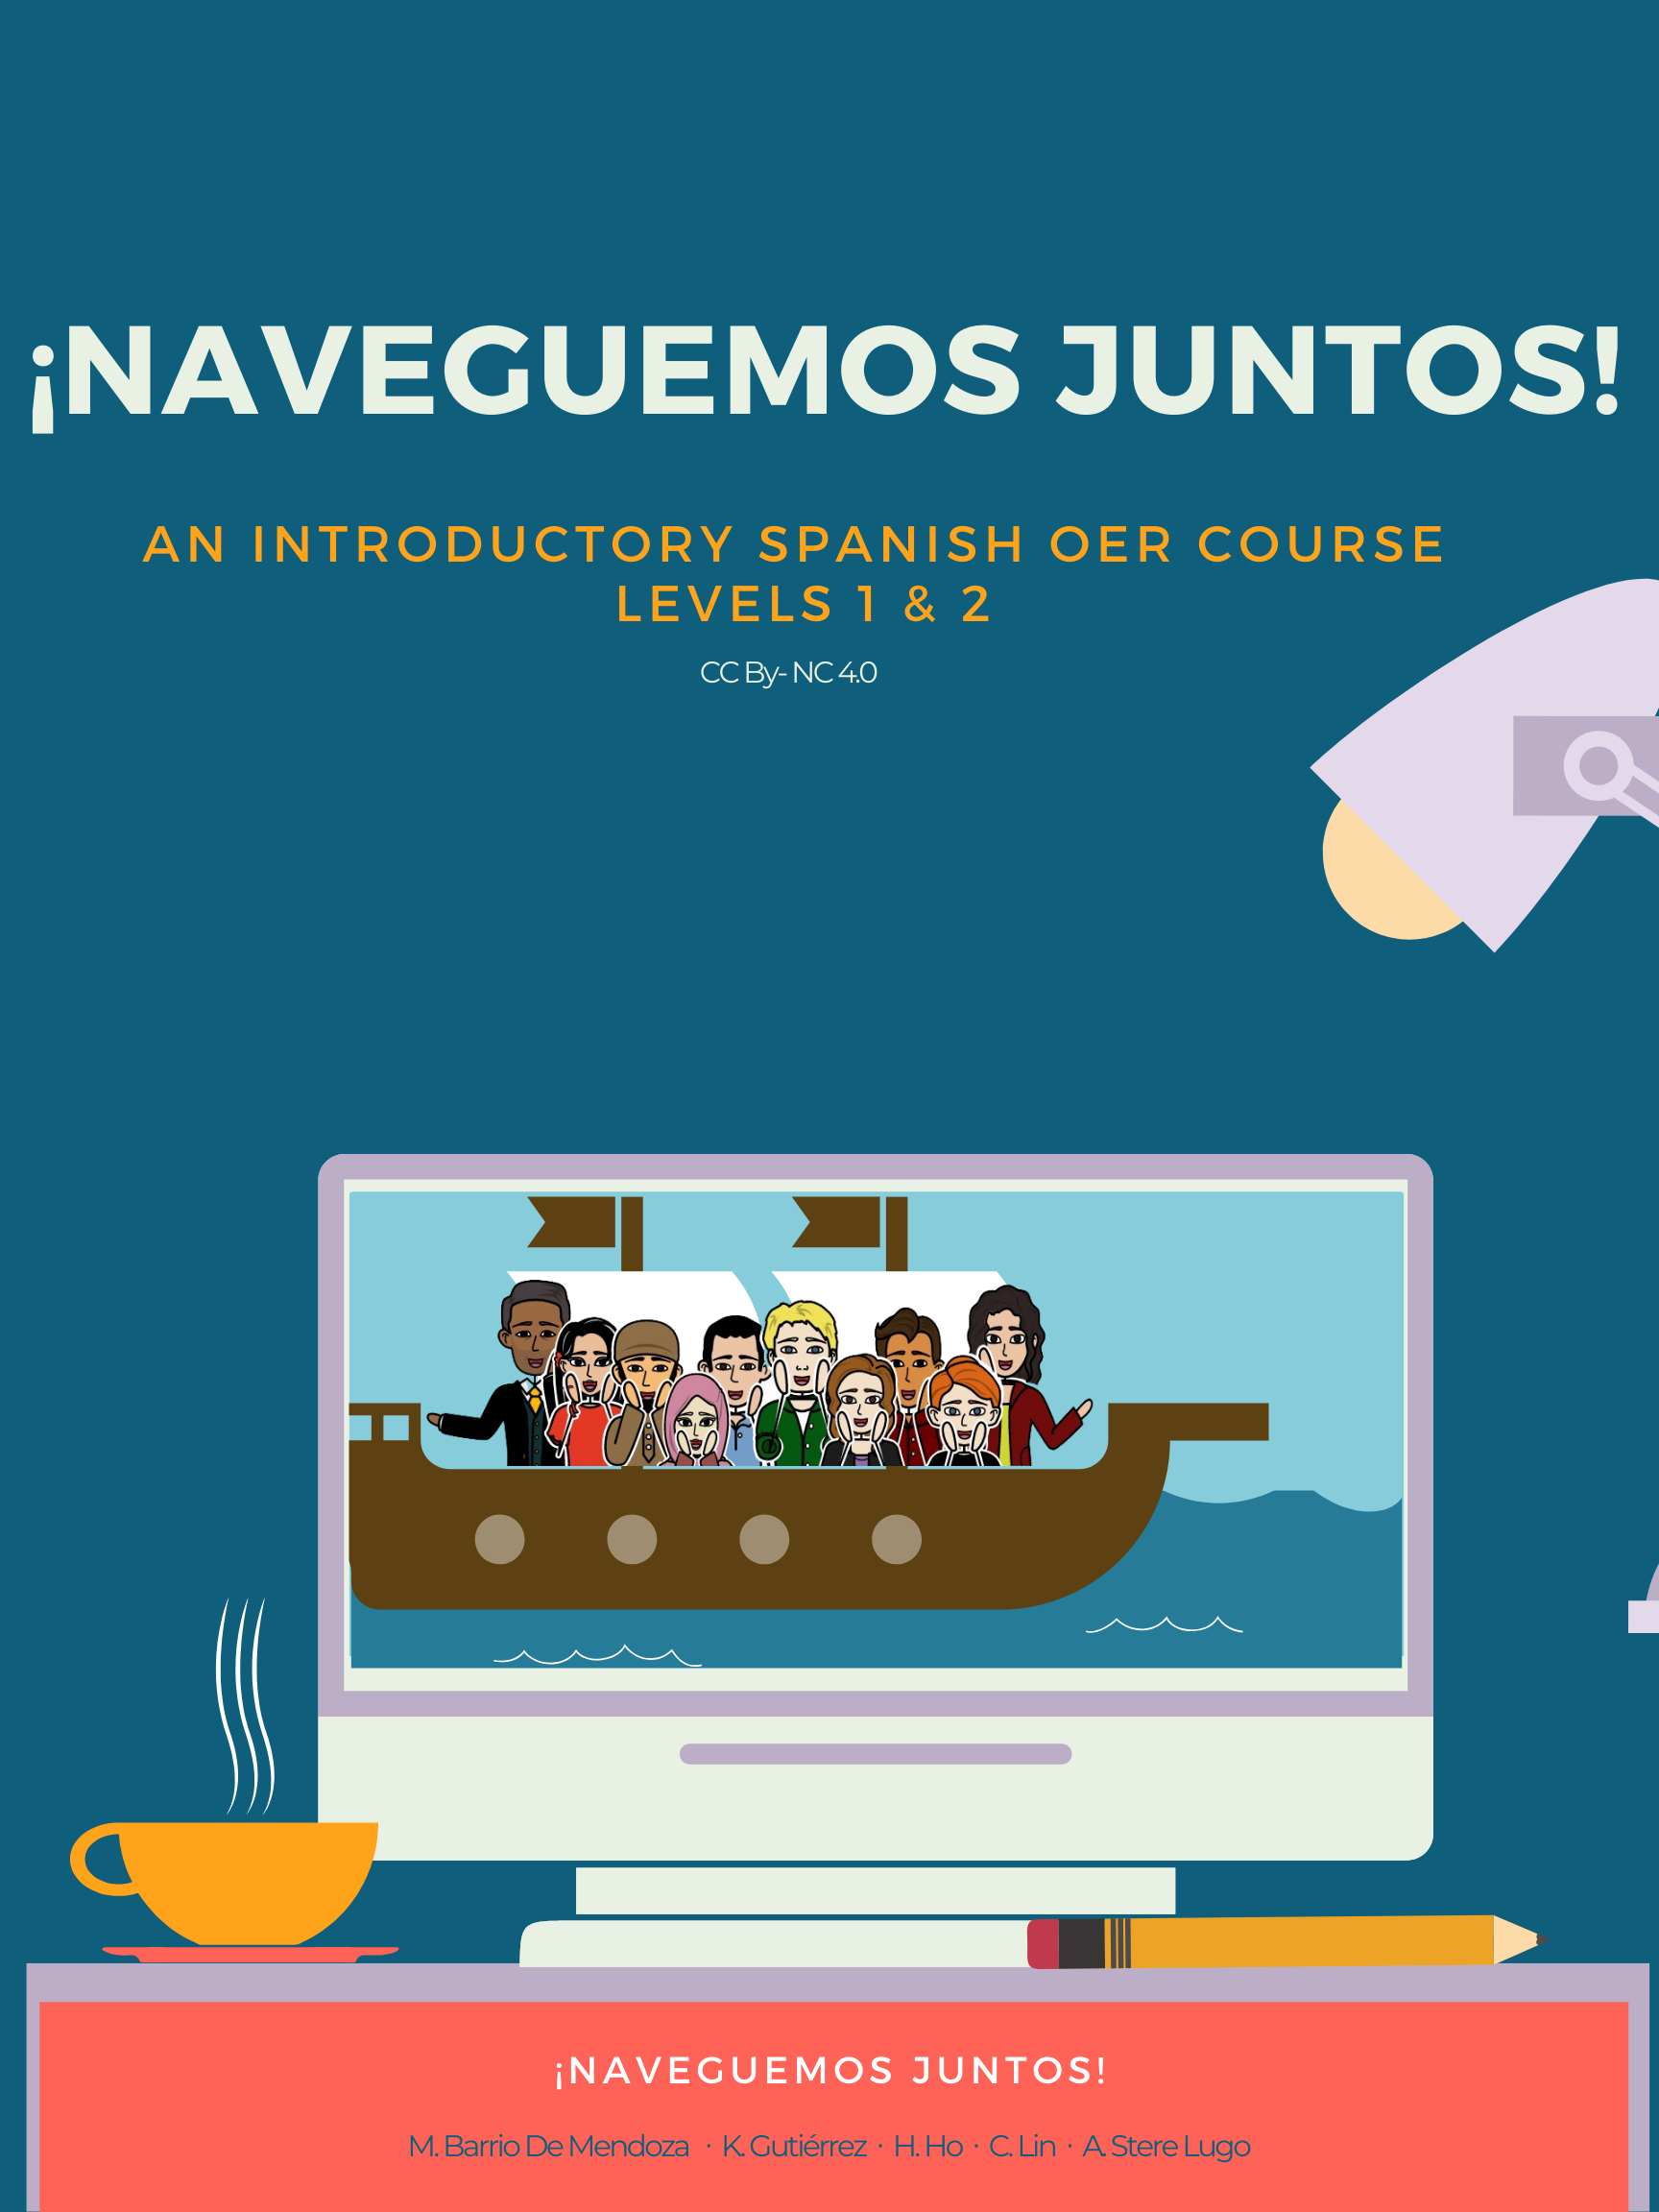 ¡Naveguemos juntos! (Mendoza, Gutiérrez, Ho, Lin, and Lugo)